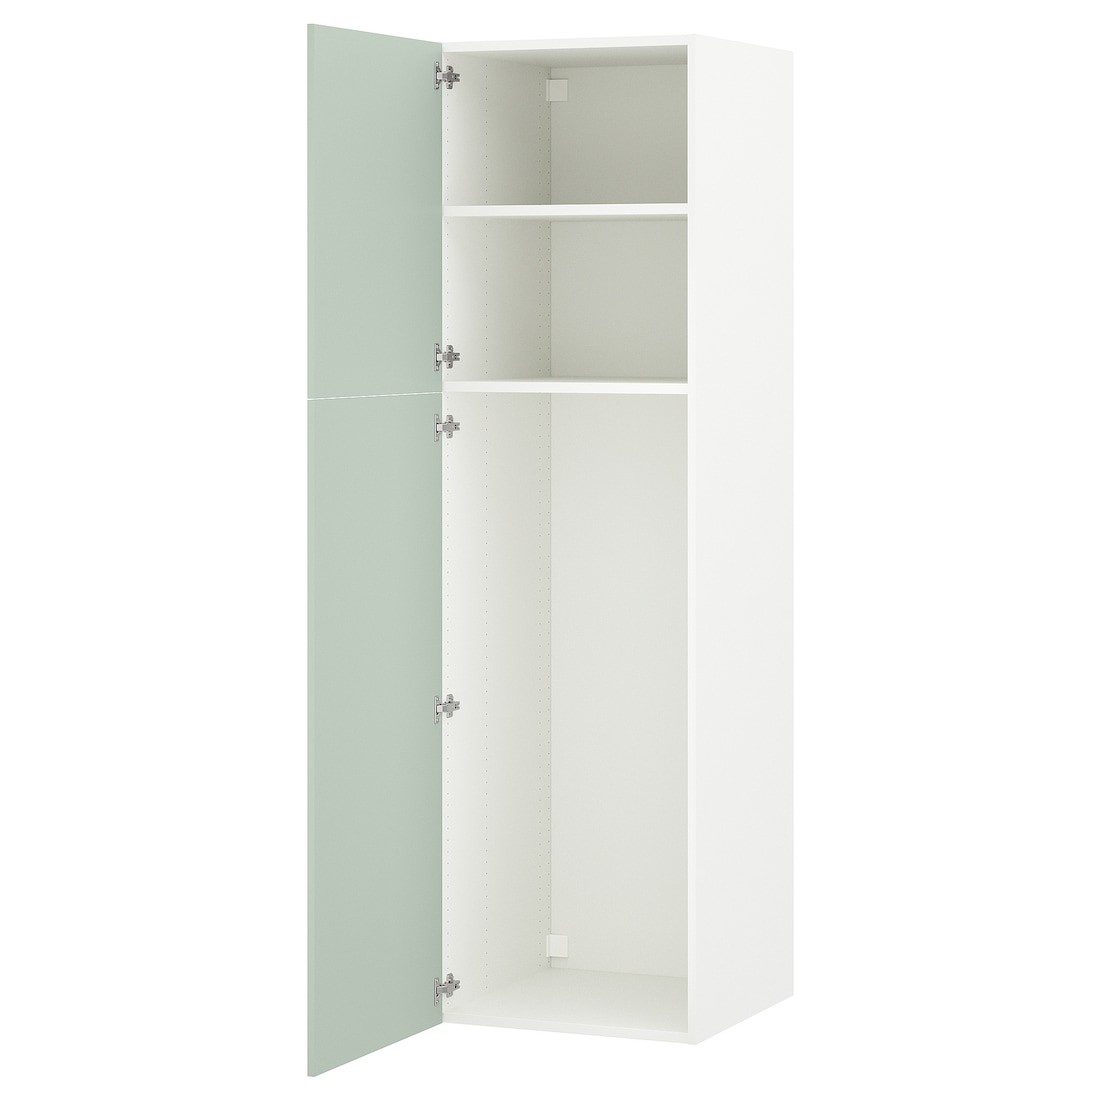 ENHET ЭНХЕТ Шкаф высокий 2 двери, белый / бледный серо-зеленый, 60x62x210 см